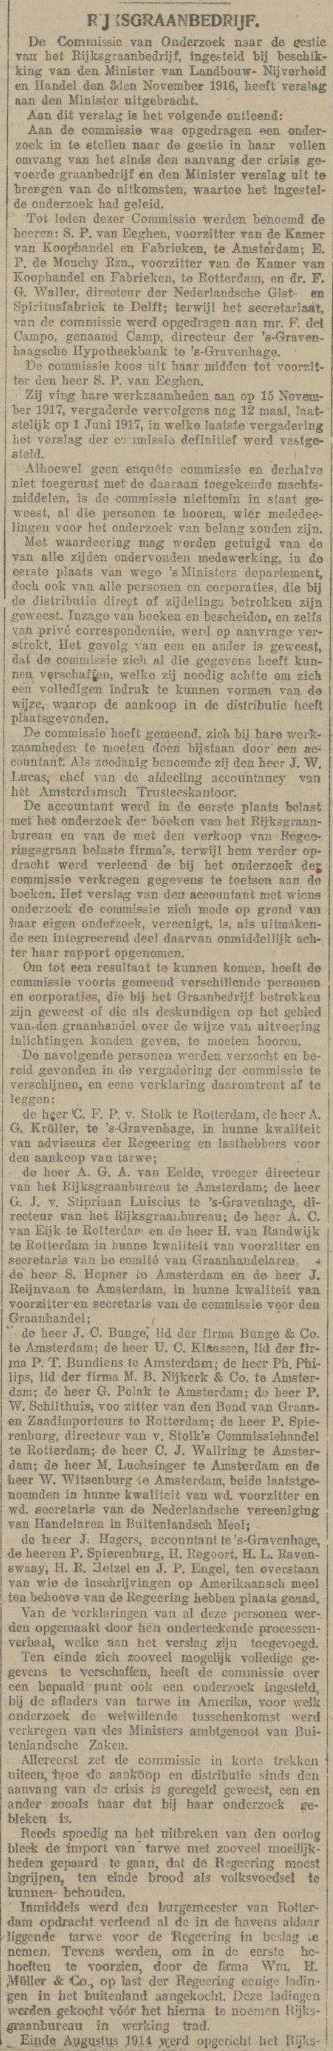 19170623-Maasbode-Rijksgraanbedrijf-1